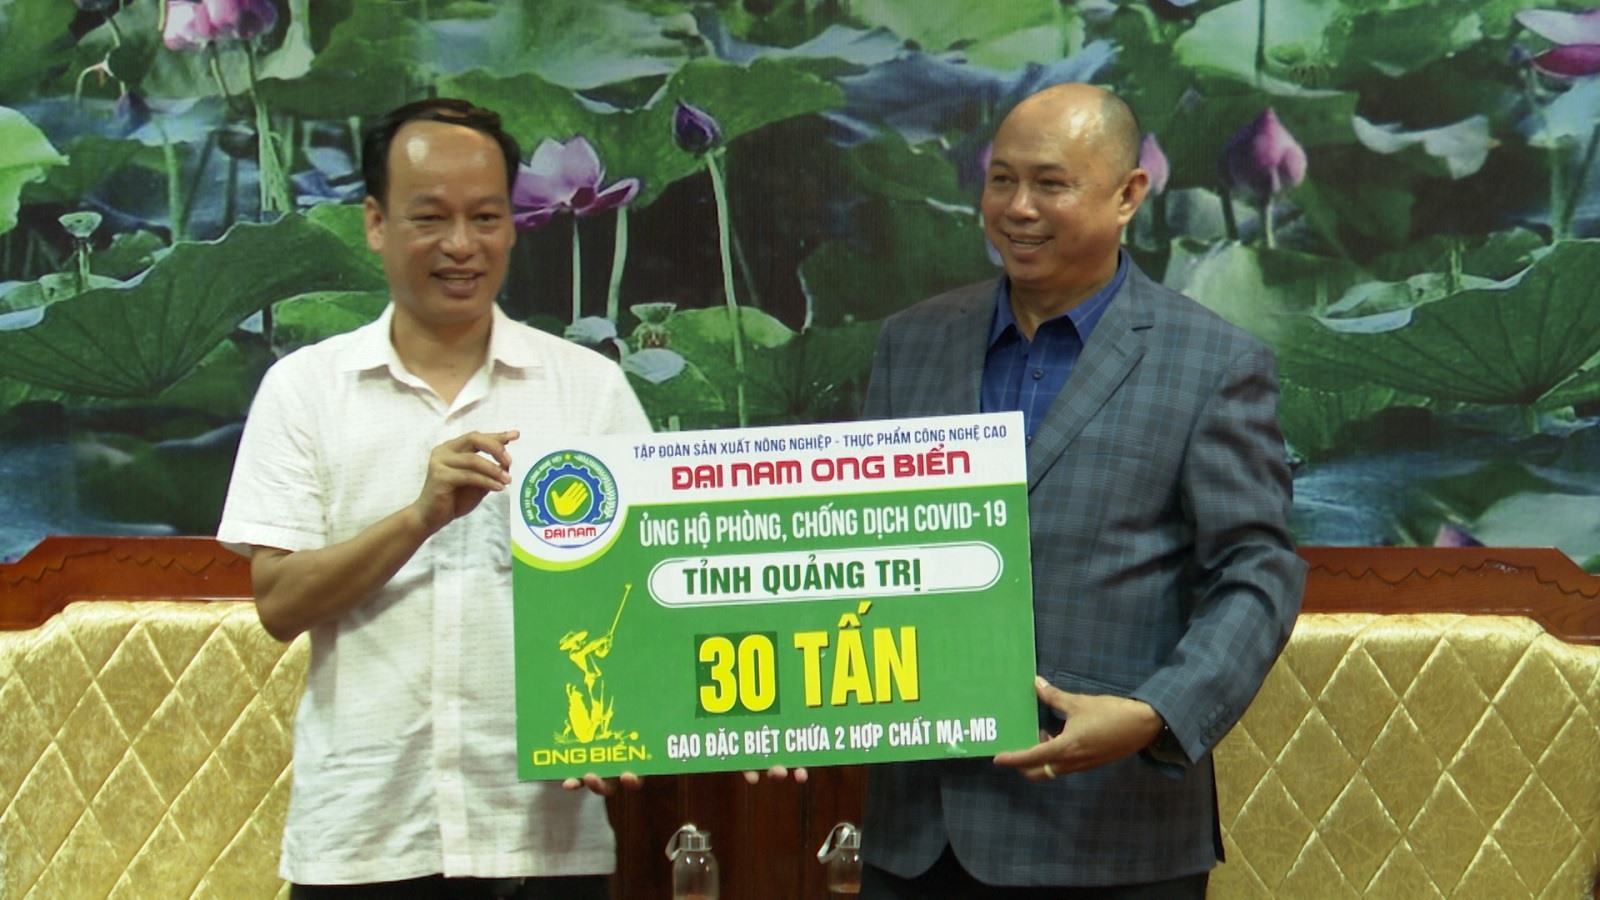 Lãnh đạo UBMTTQVN tỉnh tiếp nhận bảng tượng trưng 30 tấn gạo do Công ty CP Đại Nam Ong biển trao tặng